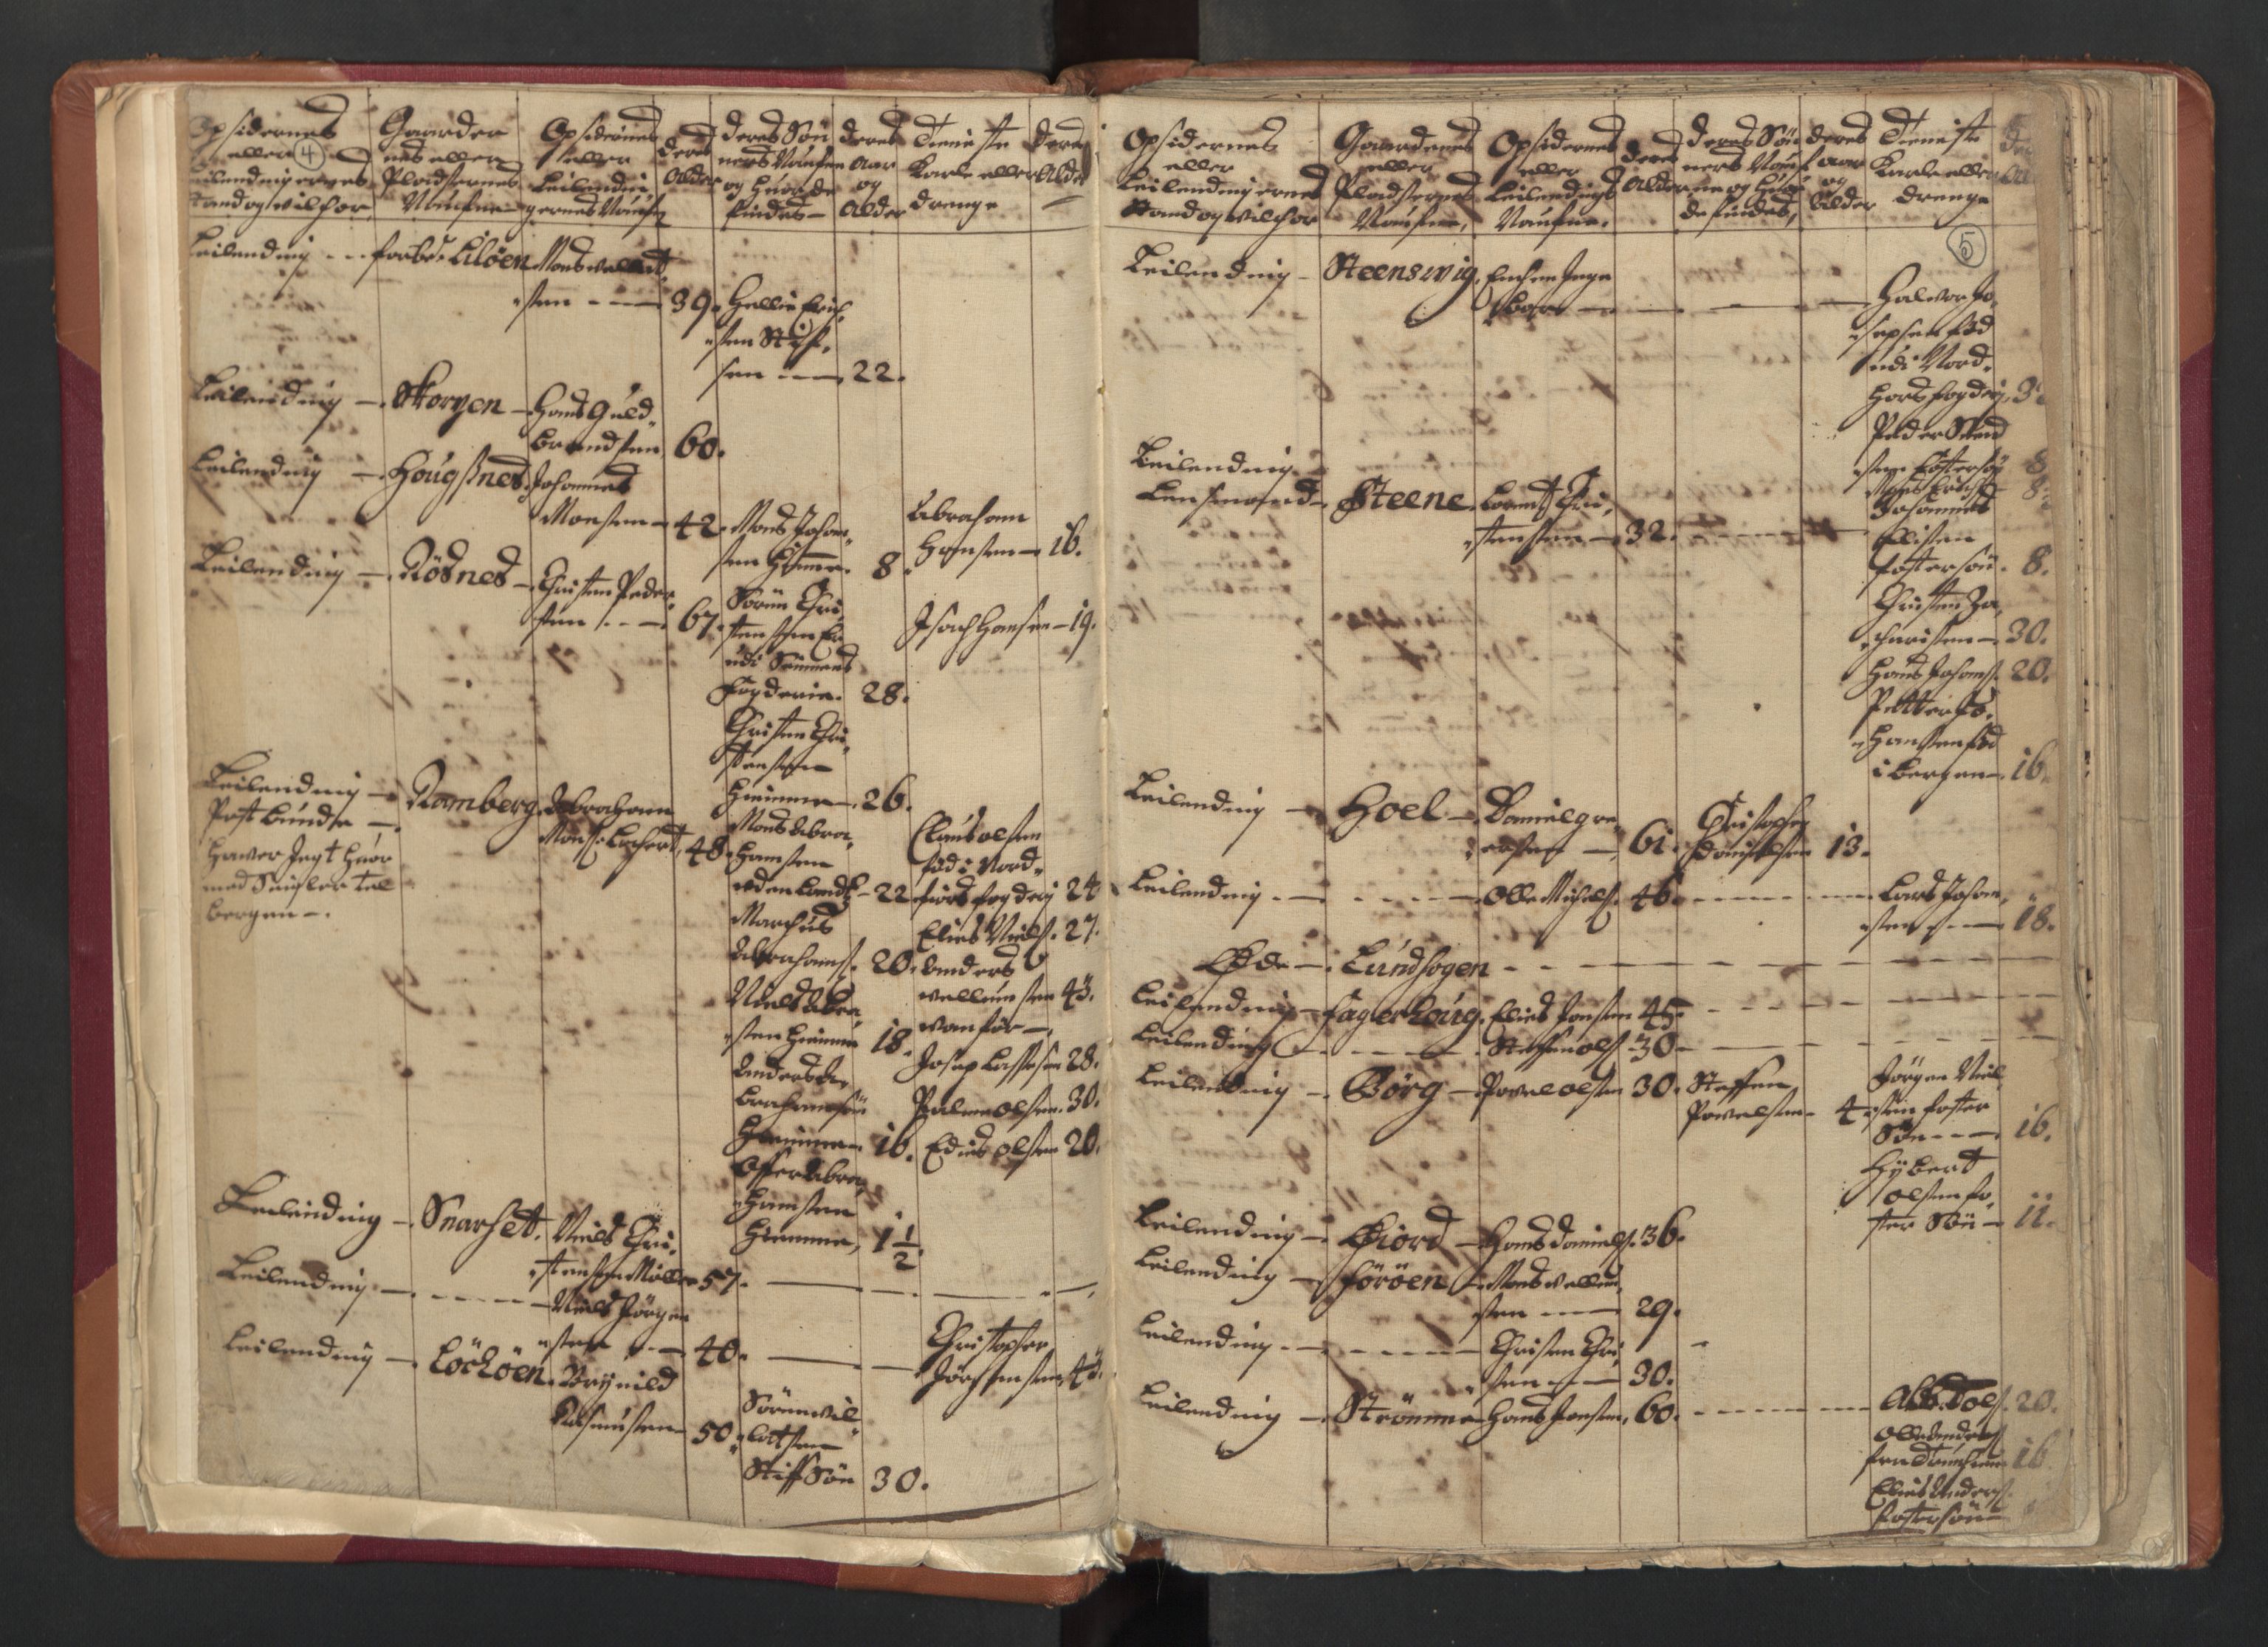 RA, Census (manntall) 1701, no. 18: Vesterålen, Andenes and Lofoten fogderi, 1701, p. 4-5